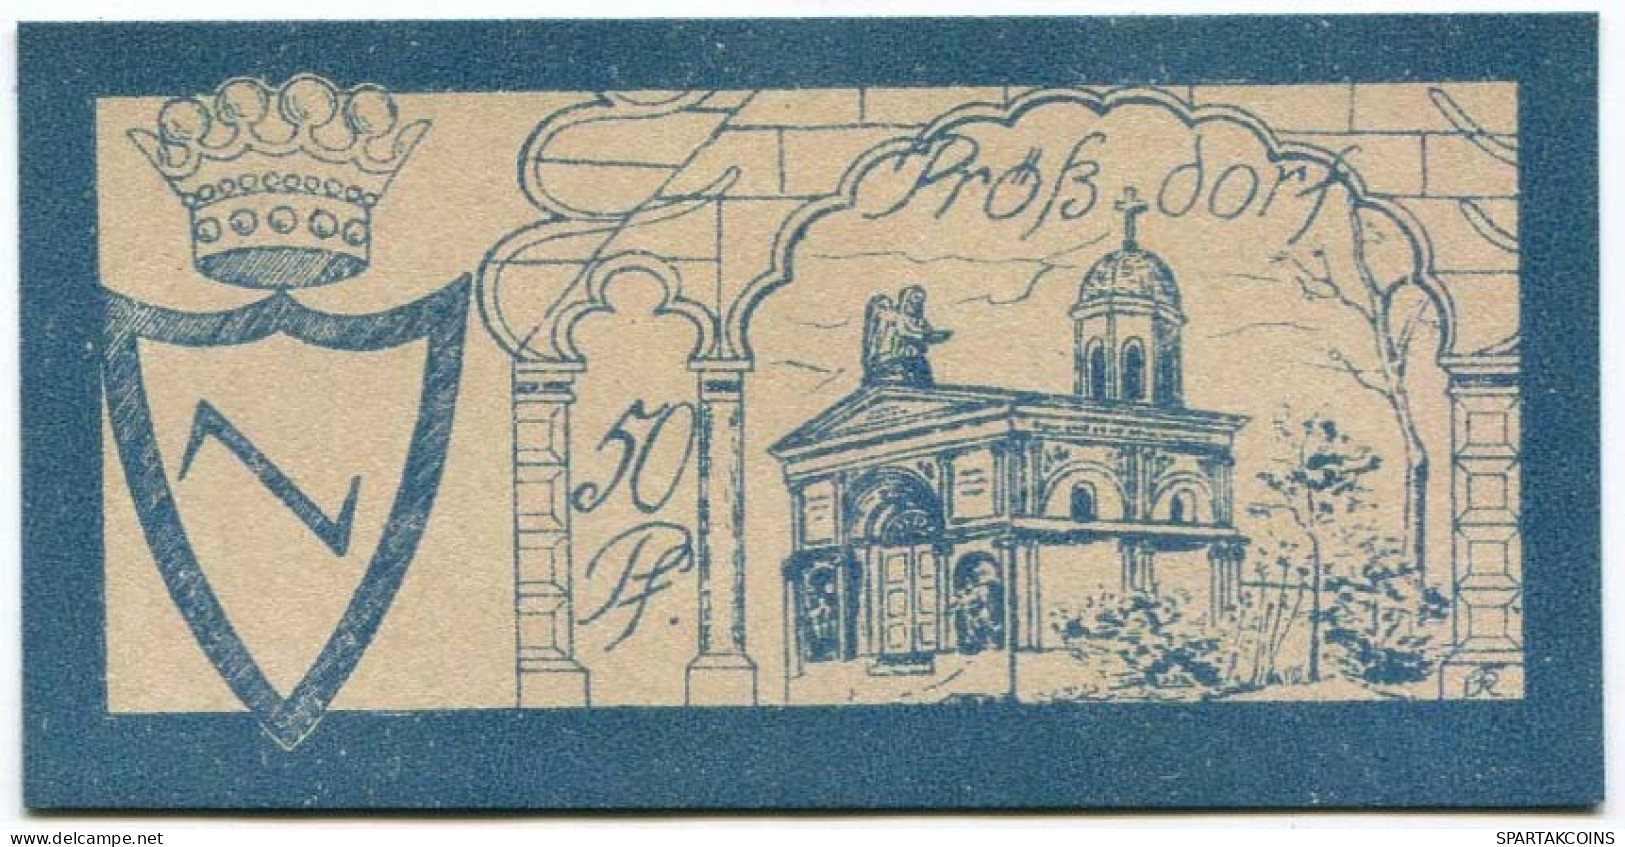 50 PFENNIG 1922 Stadt PRoSSDORF Thuringia DEUTSCHLAND Notgeld Papiergeld Banknote #PL922 - [11] Emissions Locales